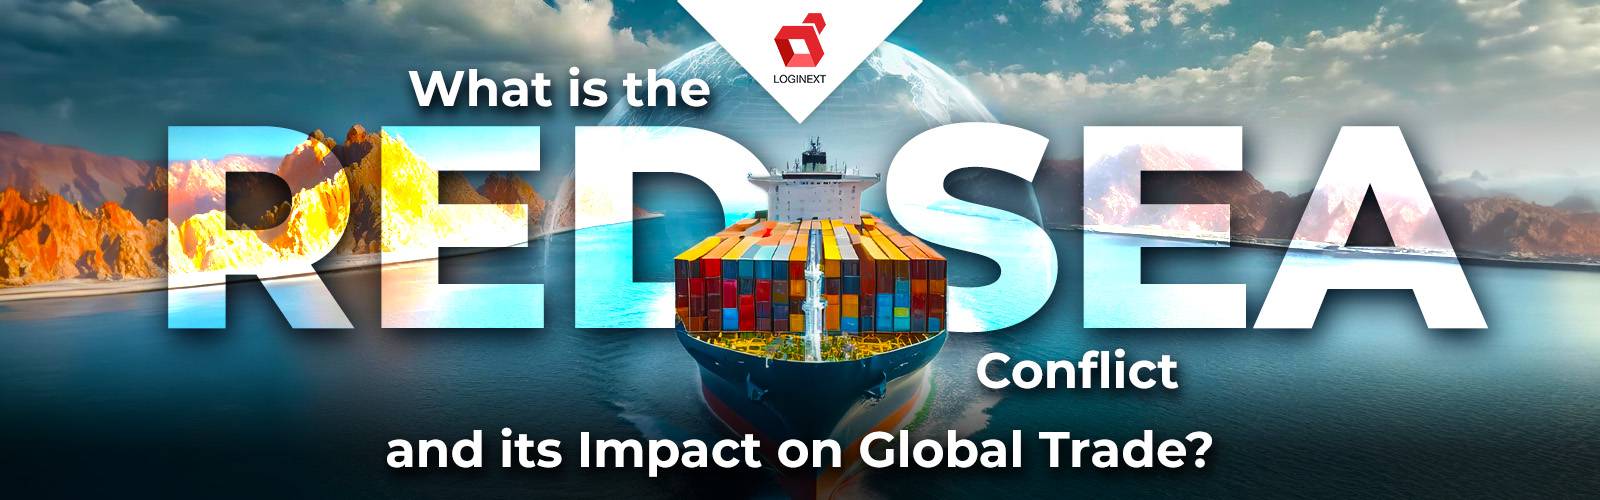 Wat is het Rode Zeeconflict en de impact ervan op de wereldhandel?